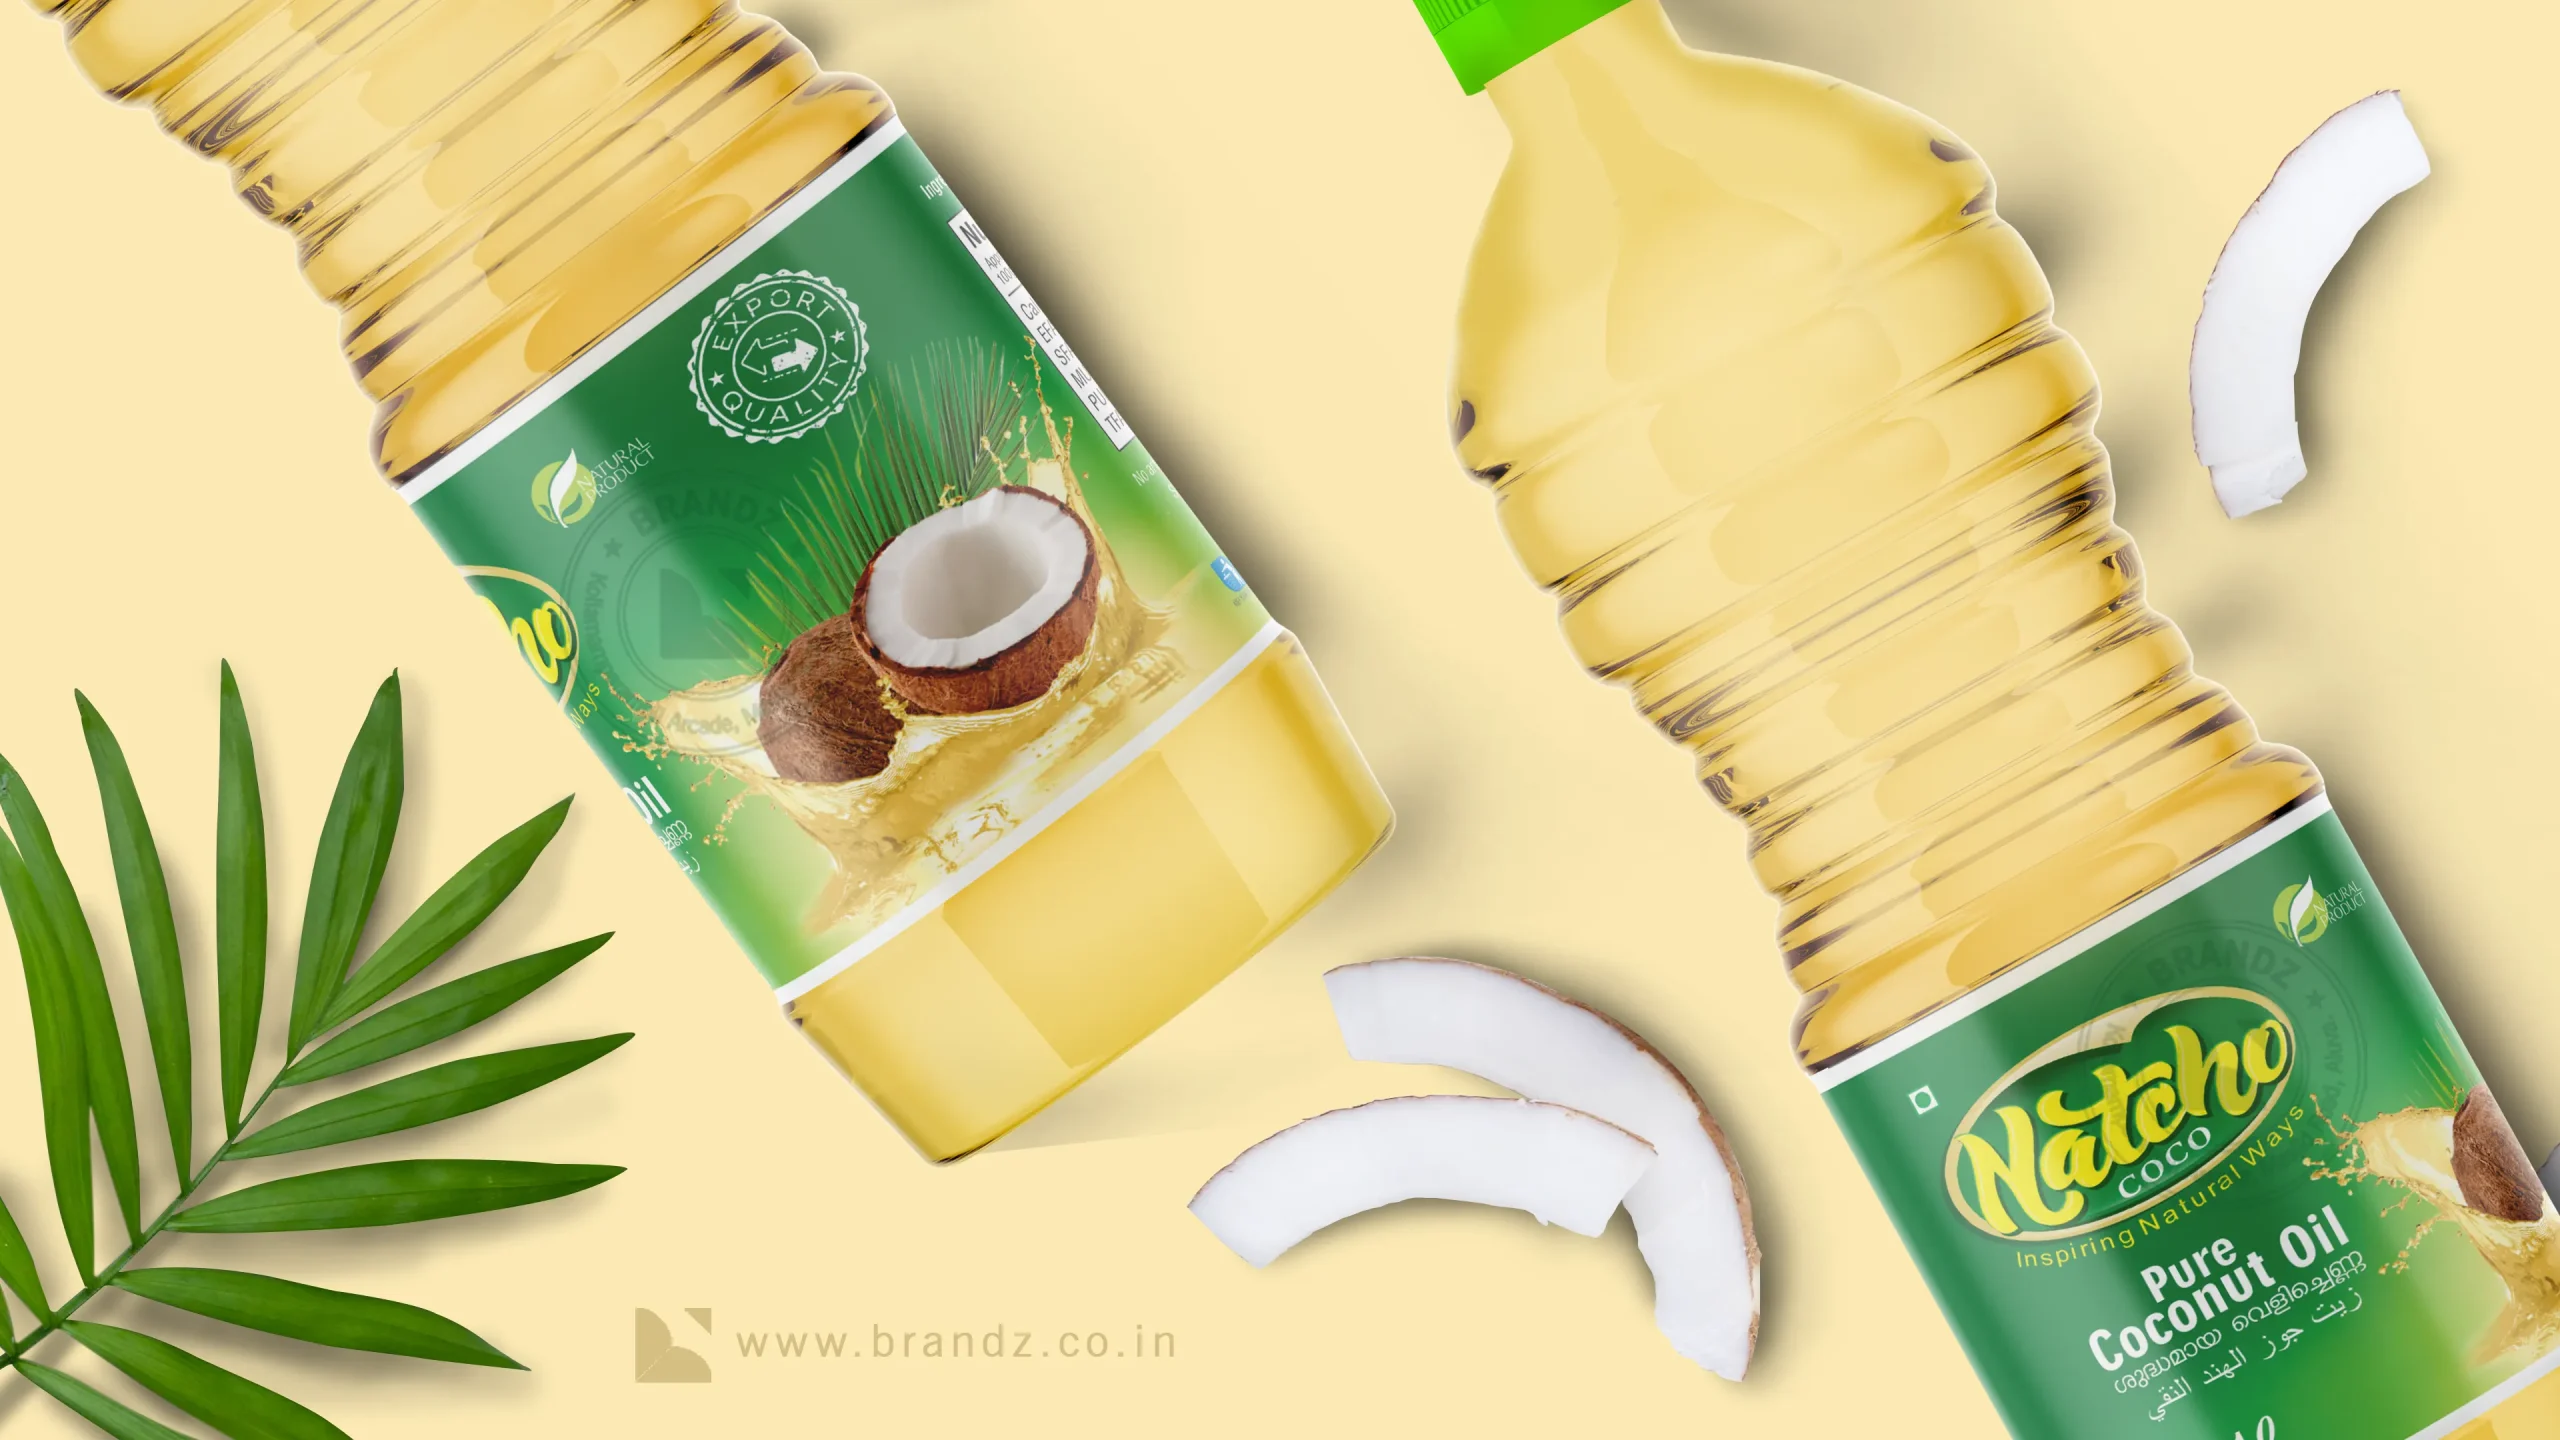 Natcho Coco Coconut Oil Label